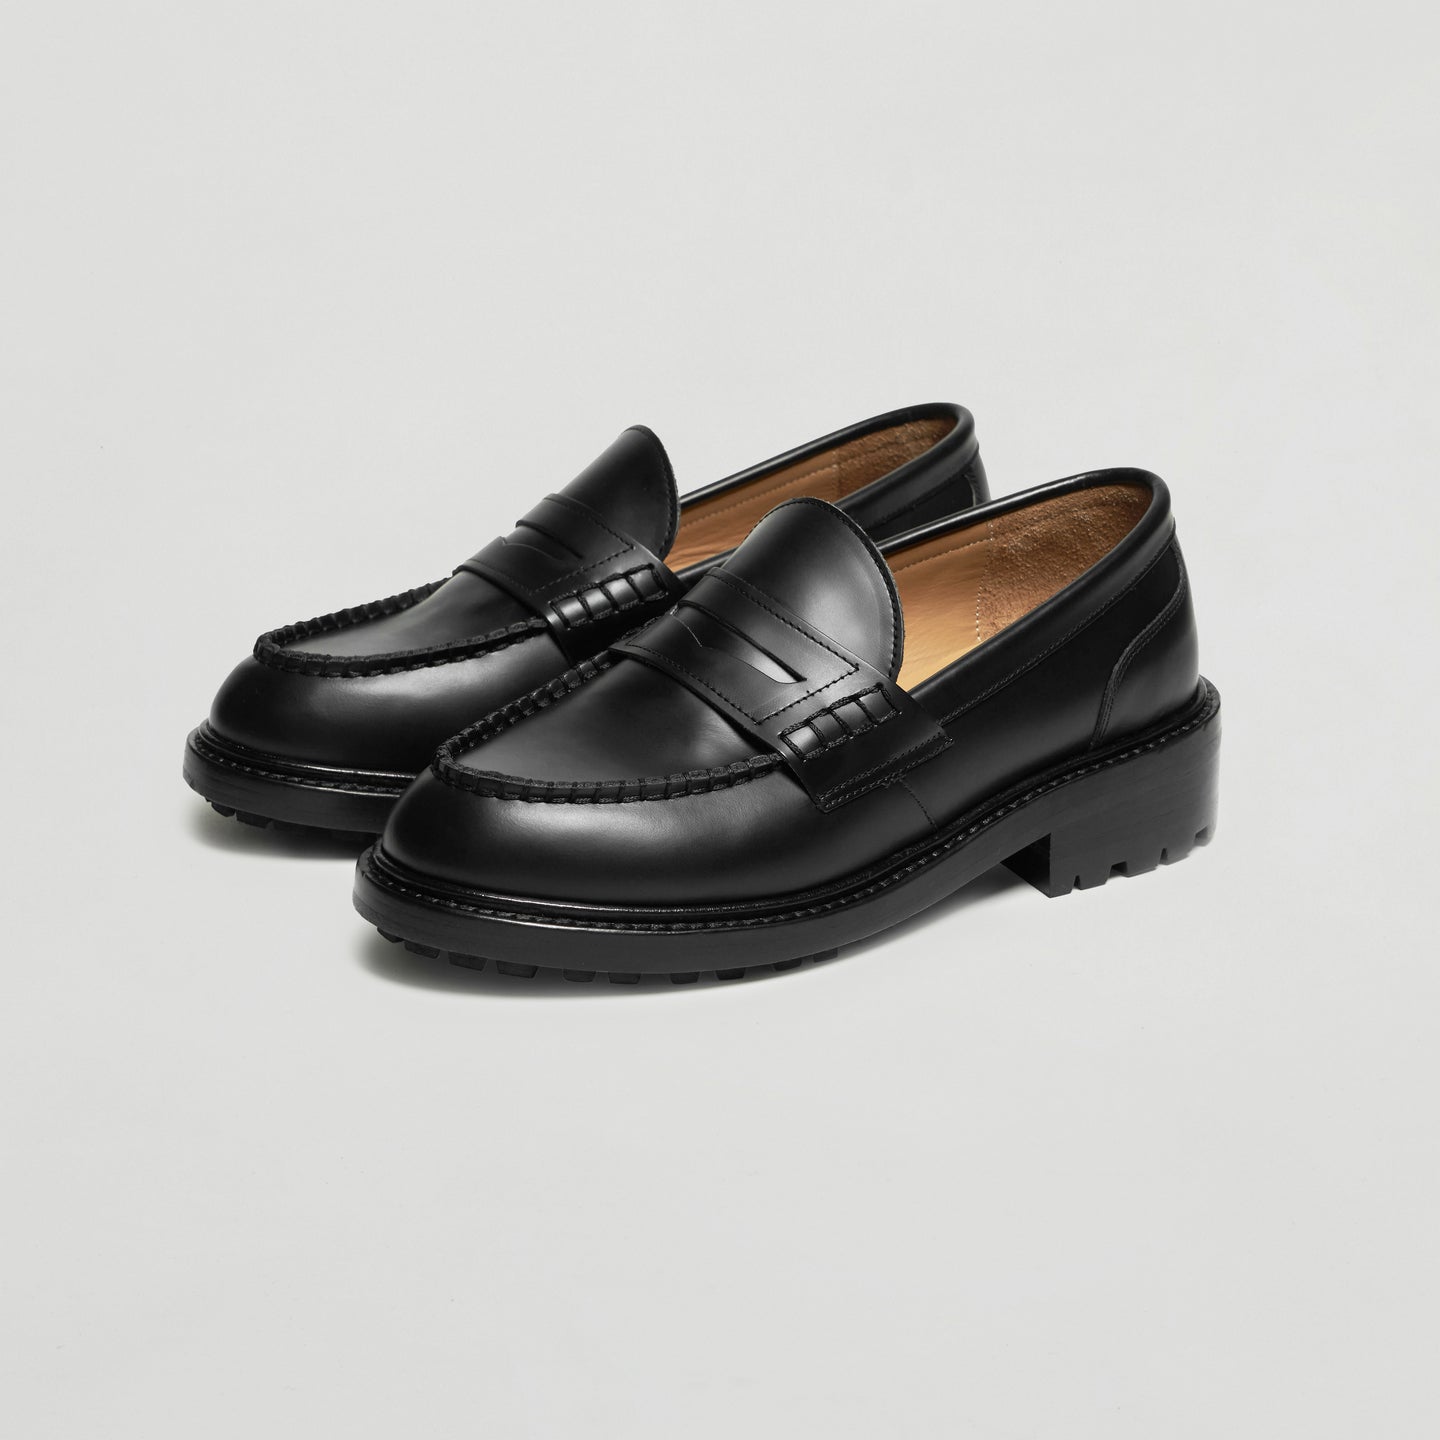 Plain Loafer Shoes (black / commando sole)